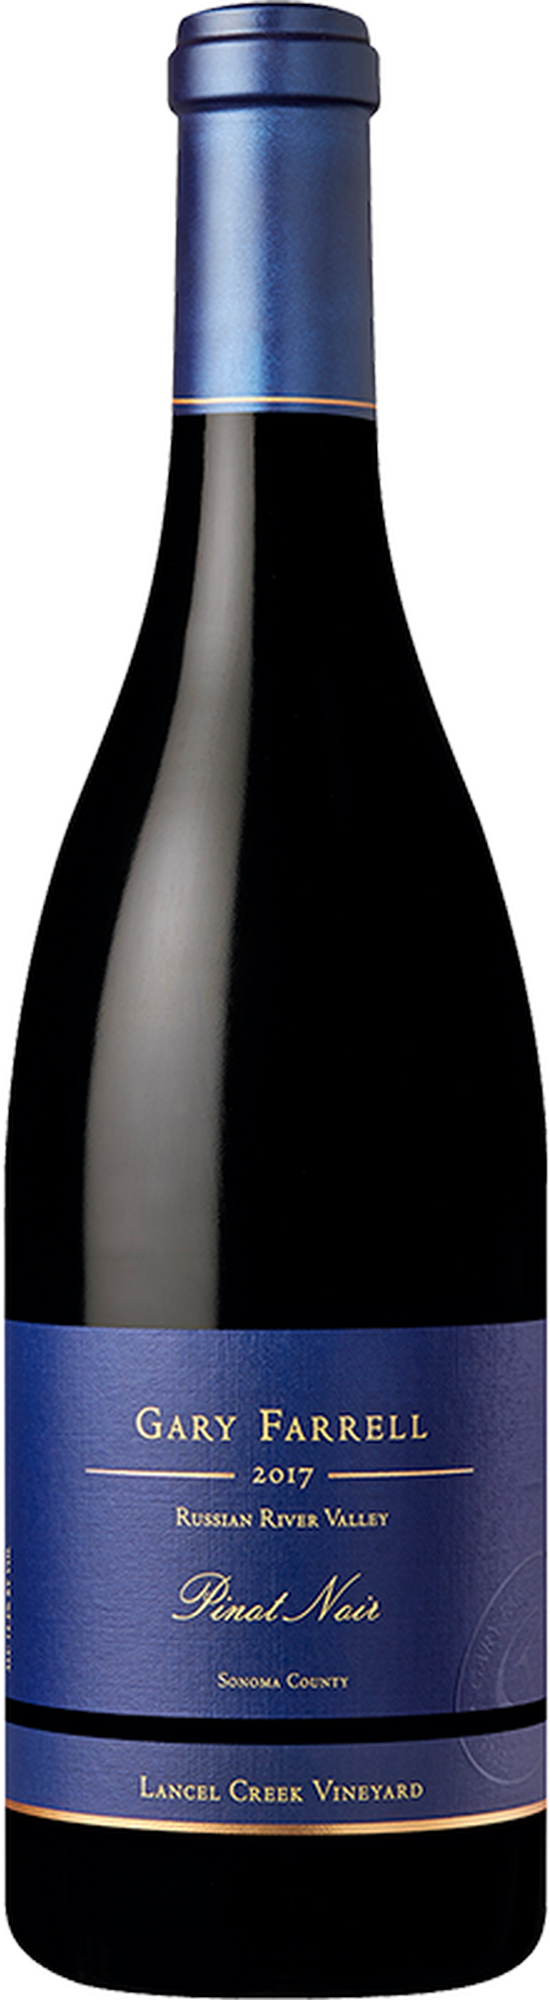 2017 Lancel Creek Vineyard Pinot Noir